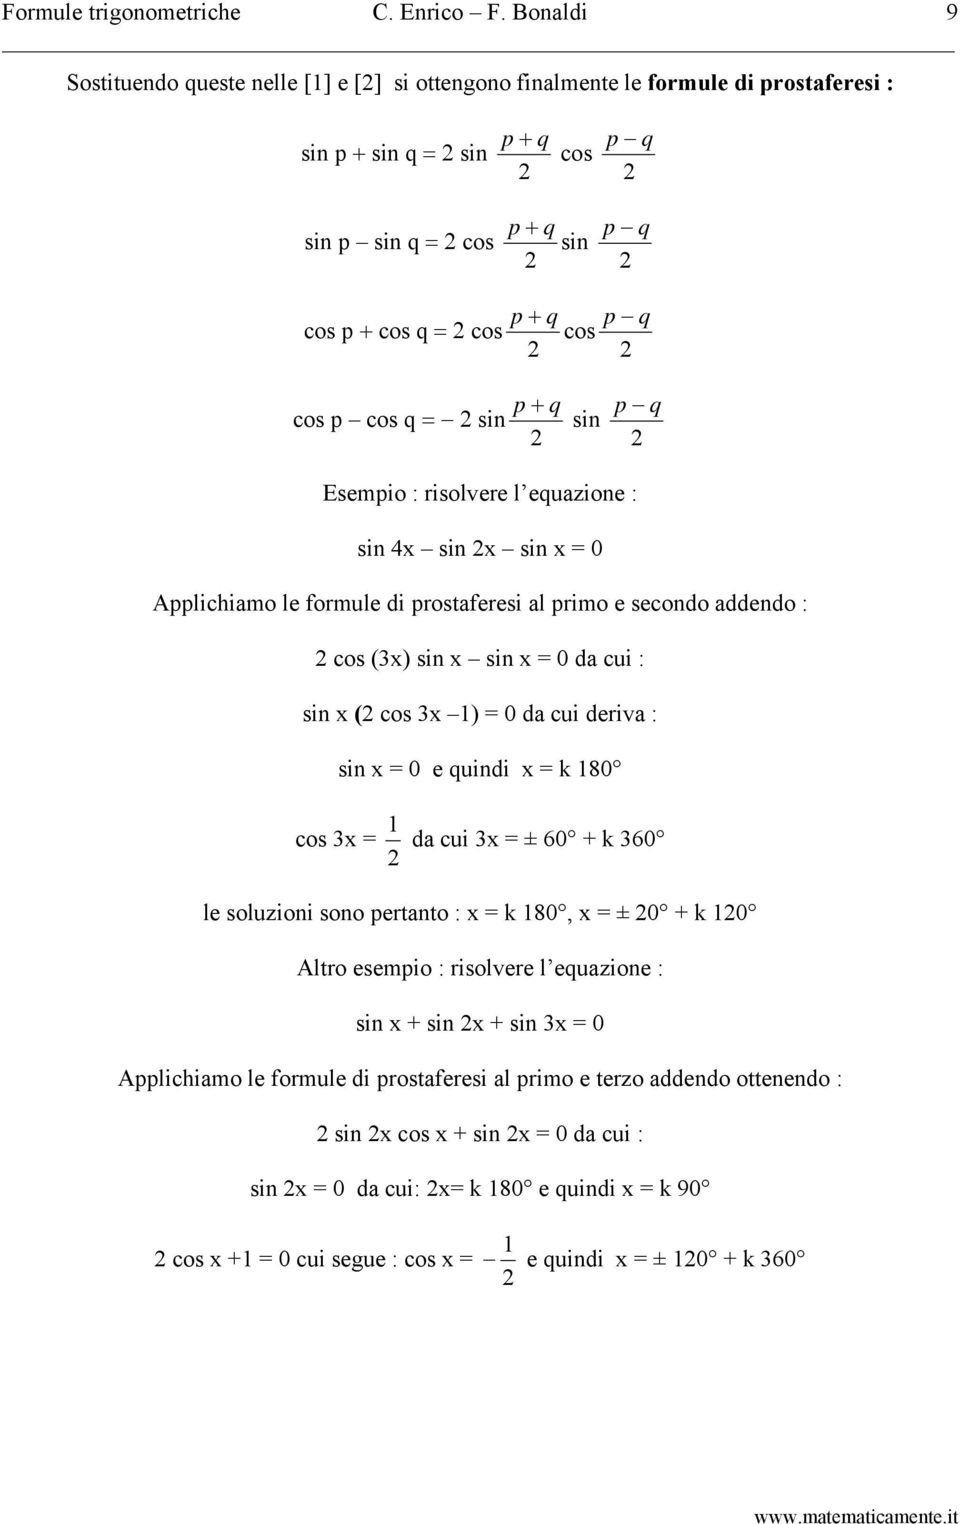 cos q sin p + q sin p q Esempio : risolvere l equazione : sin 4x sin x sin x 0 Applichiamo le formule di prostaferesi al primo e secondo addendo : cos (3x) sin x sin x 0 da cui : sin x ( cos 3x 1) 0